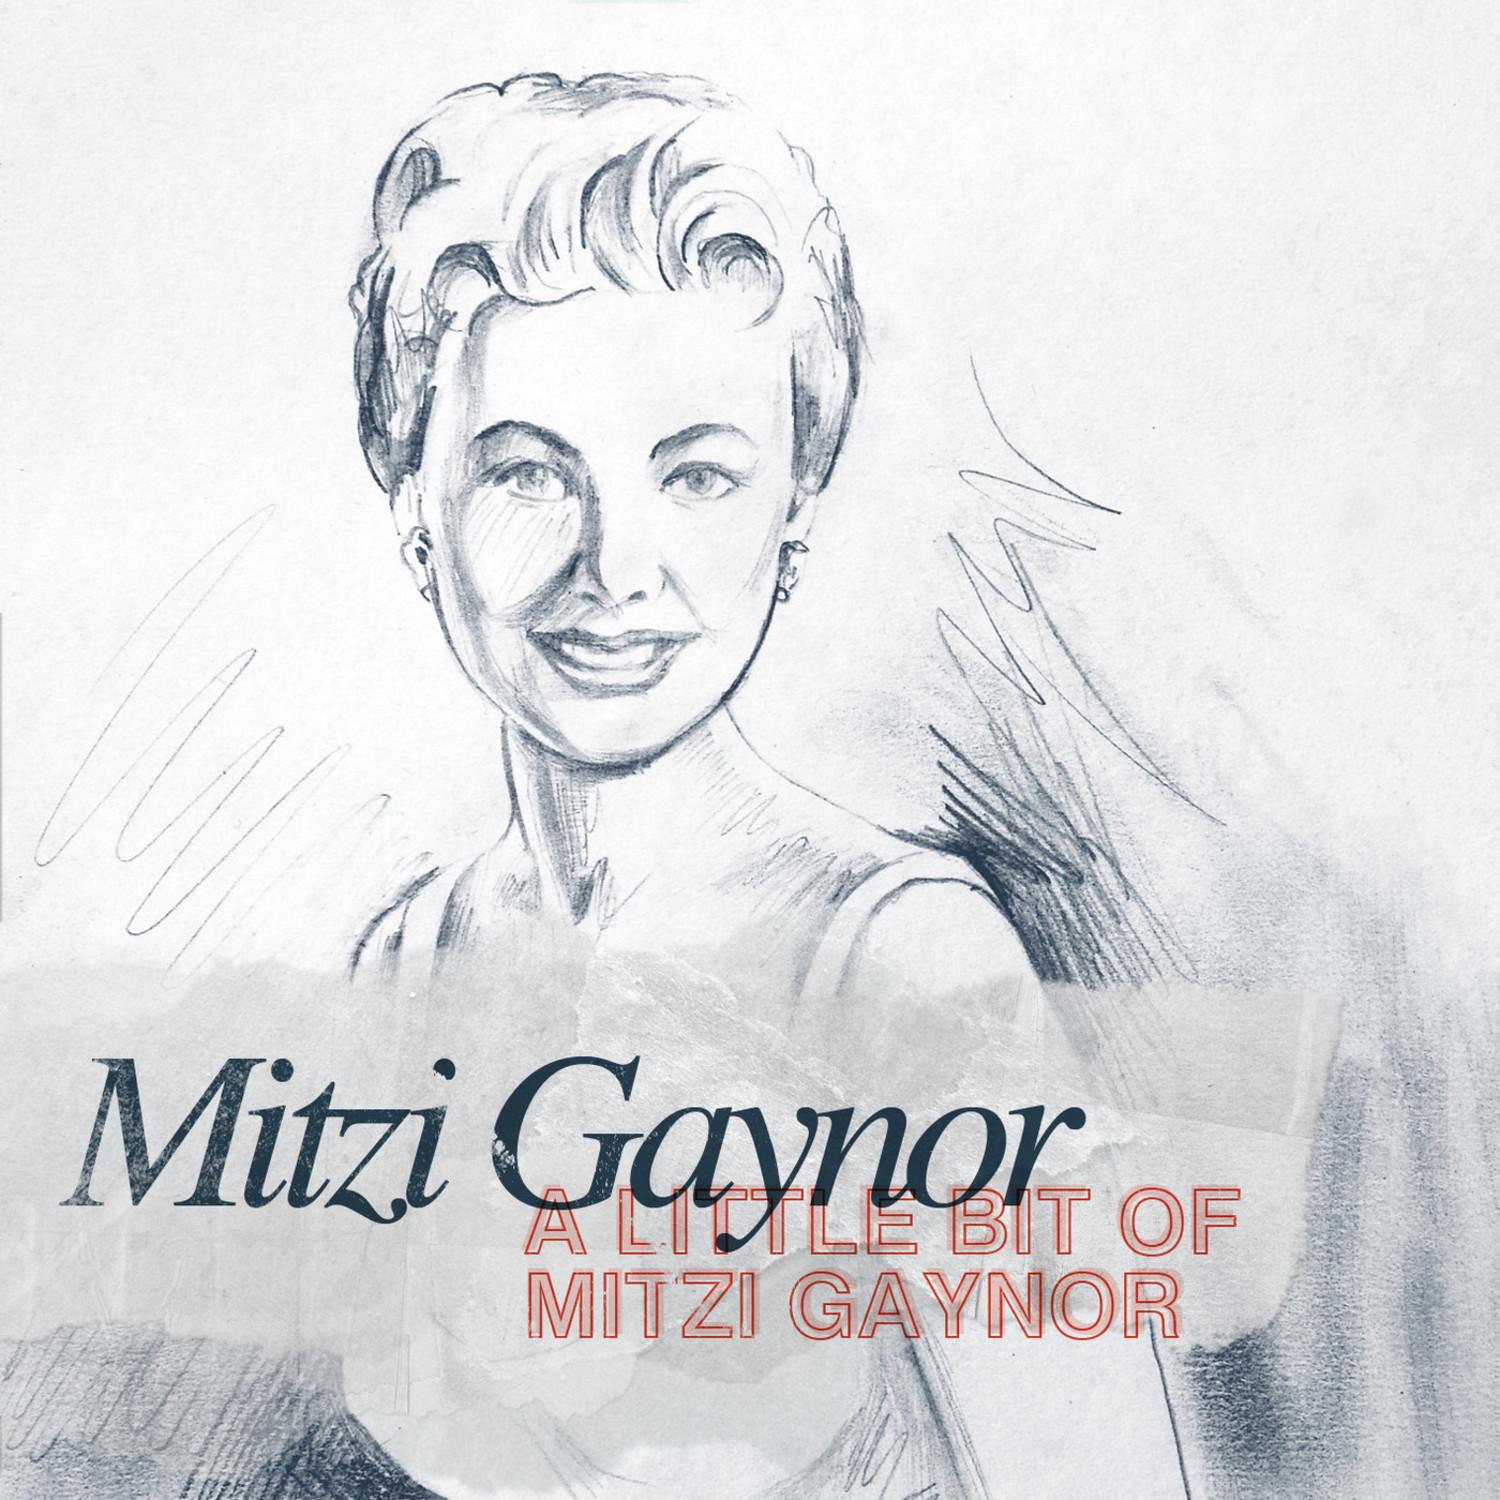 A Little bit of Mitzi Gaynor